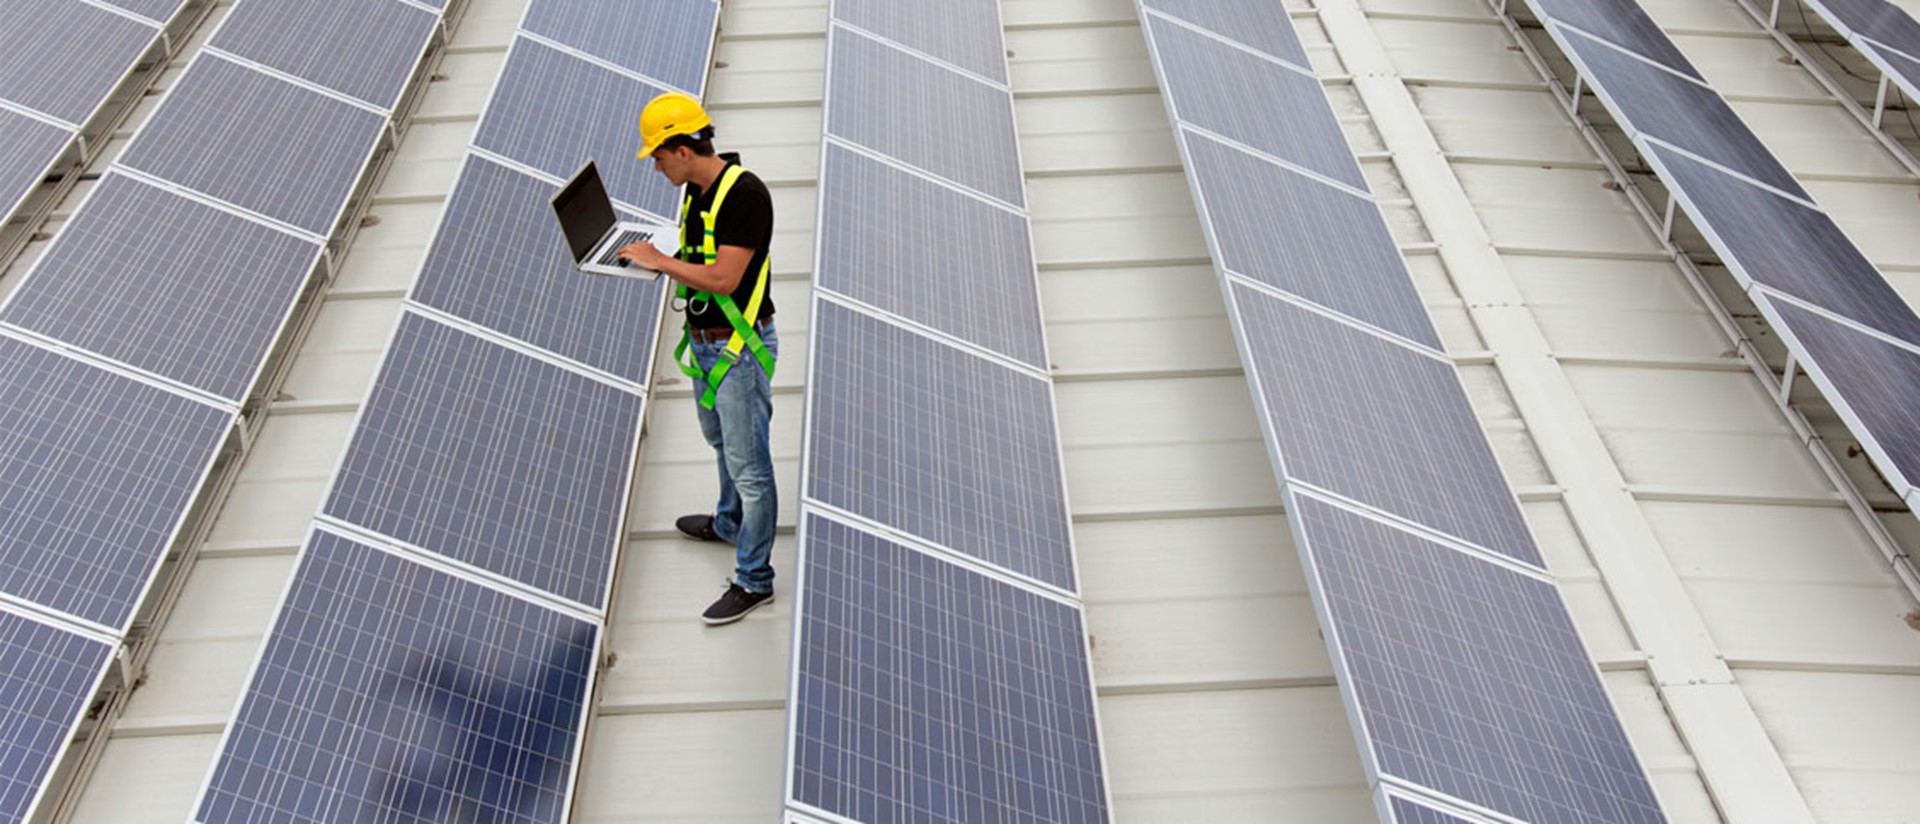 Installateur op het dak van een bedrijfspand met veel zonnepanelen | Fiscaal voordeel: met subsidie zonnepanelen aanschaffen